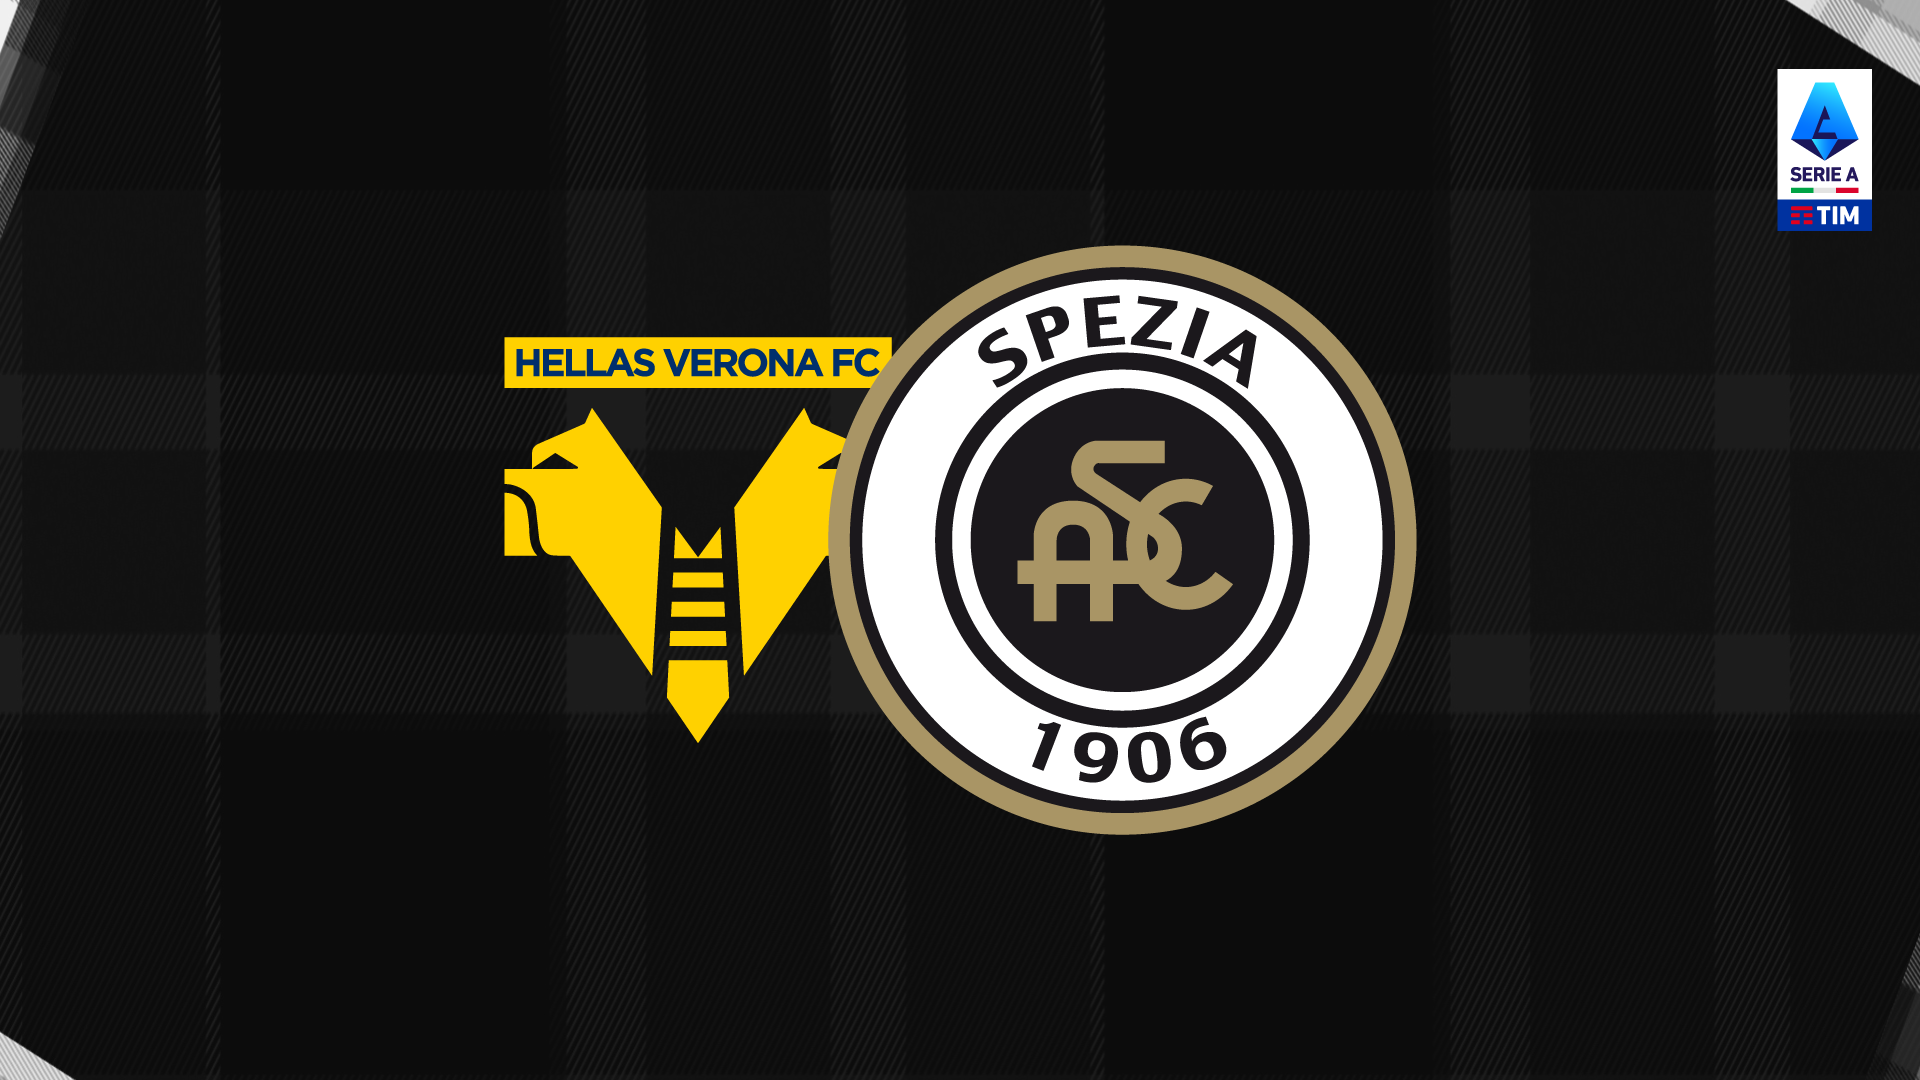 Serie A TIM: Hellas Verona-Spezia 1-2